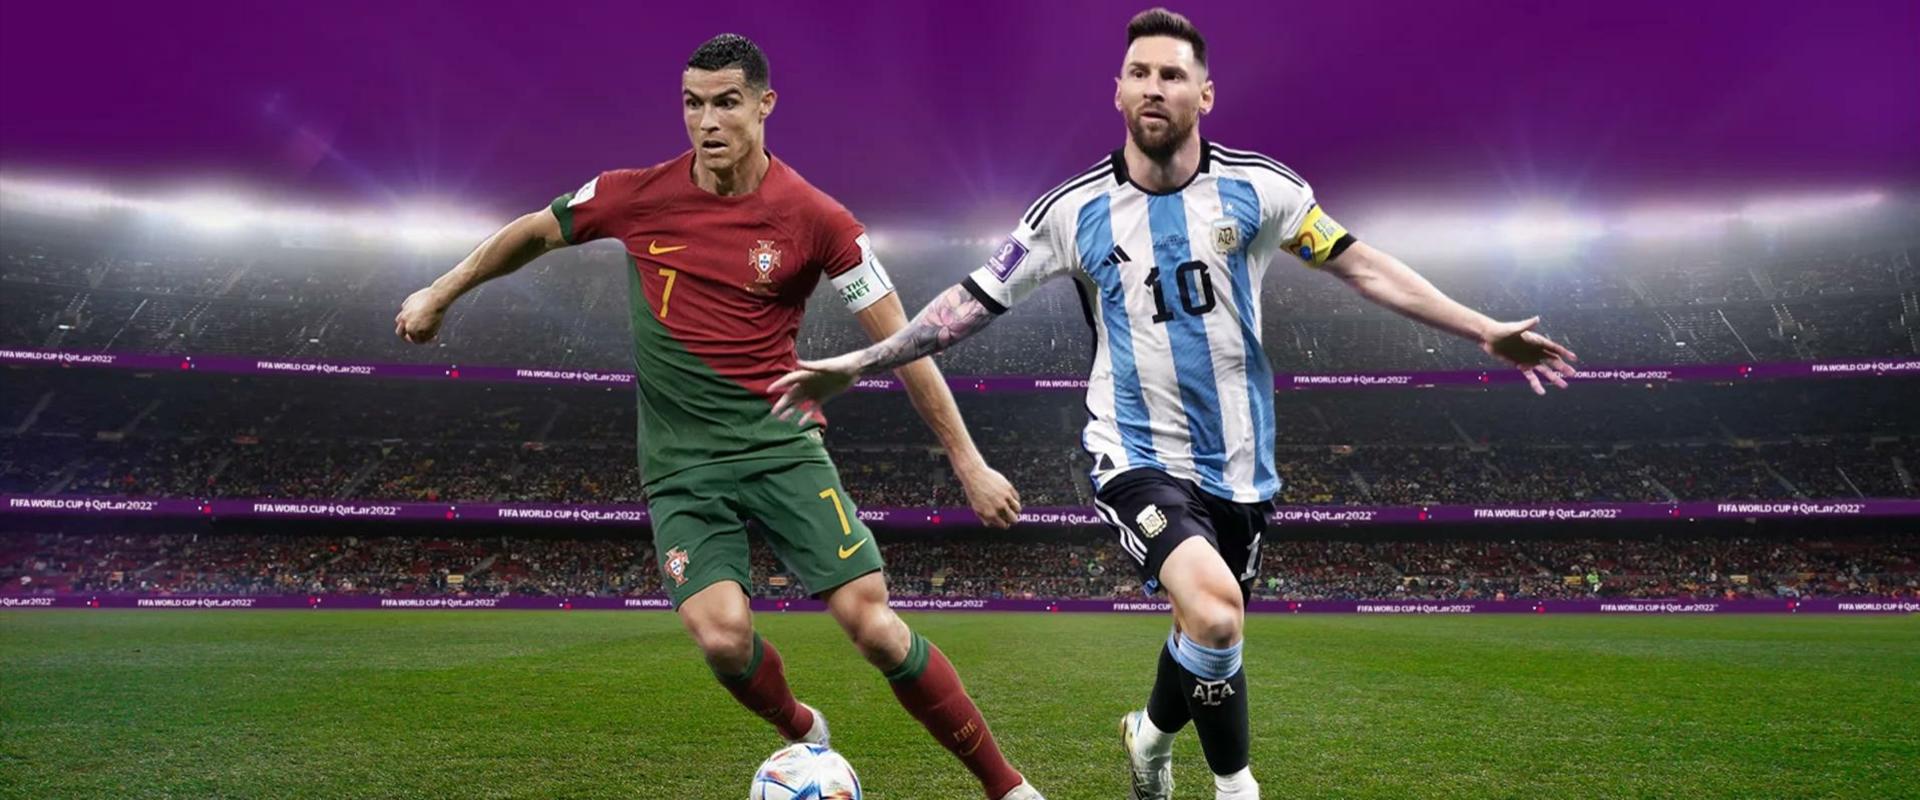 Ki a jobb focista, Messi vagy Ronaldo? Döntsön a FIFA!